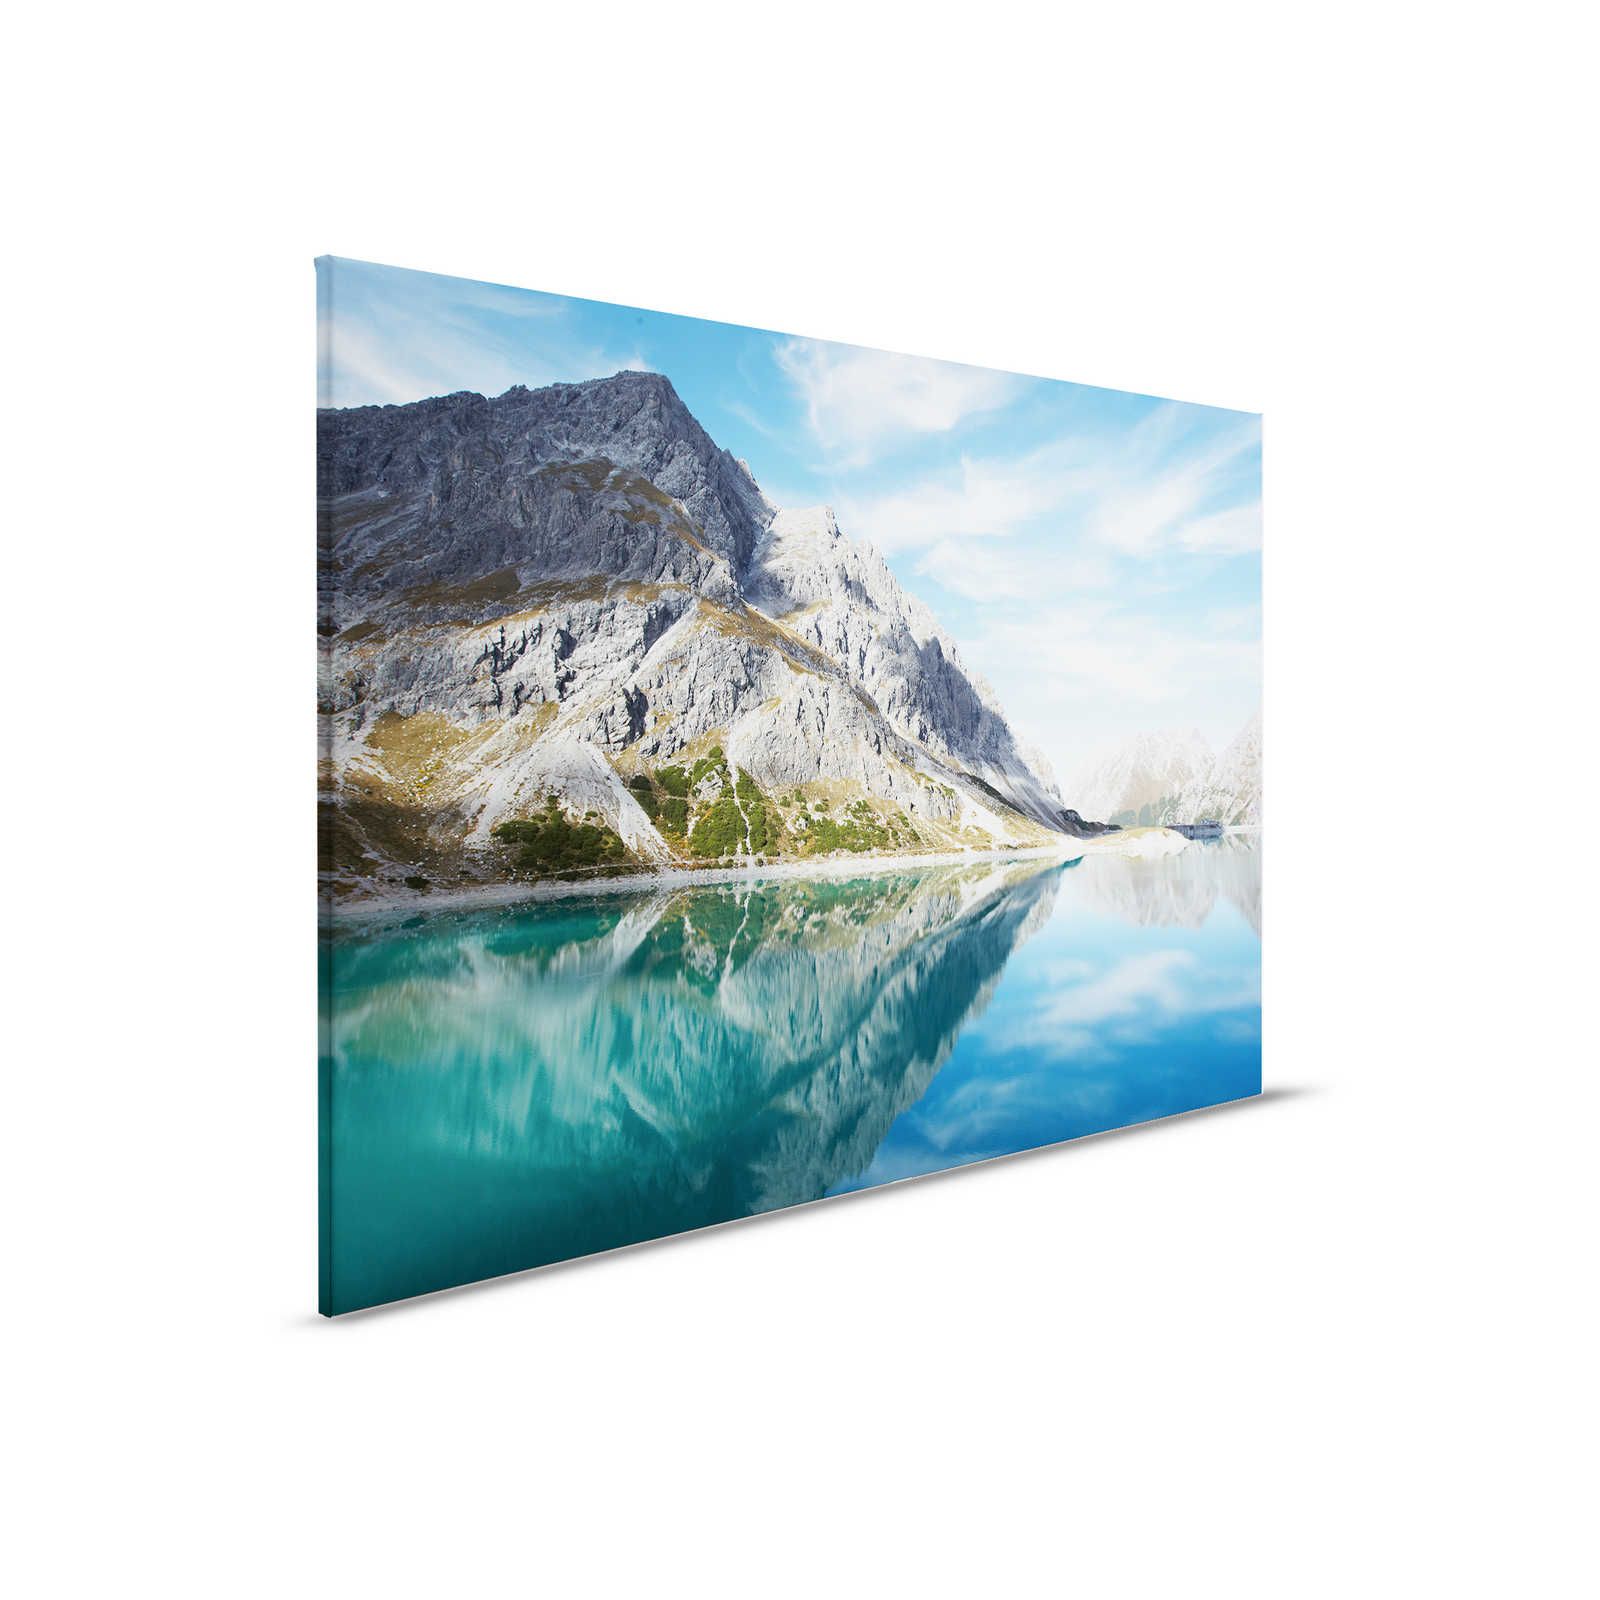 Lago di montagna trasparente - Quadro su tela con panorama naturale di montagna - 0,90 m x 0,60 m
